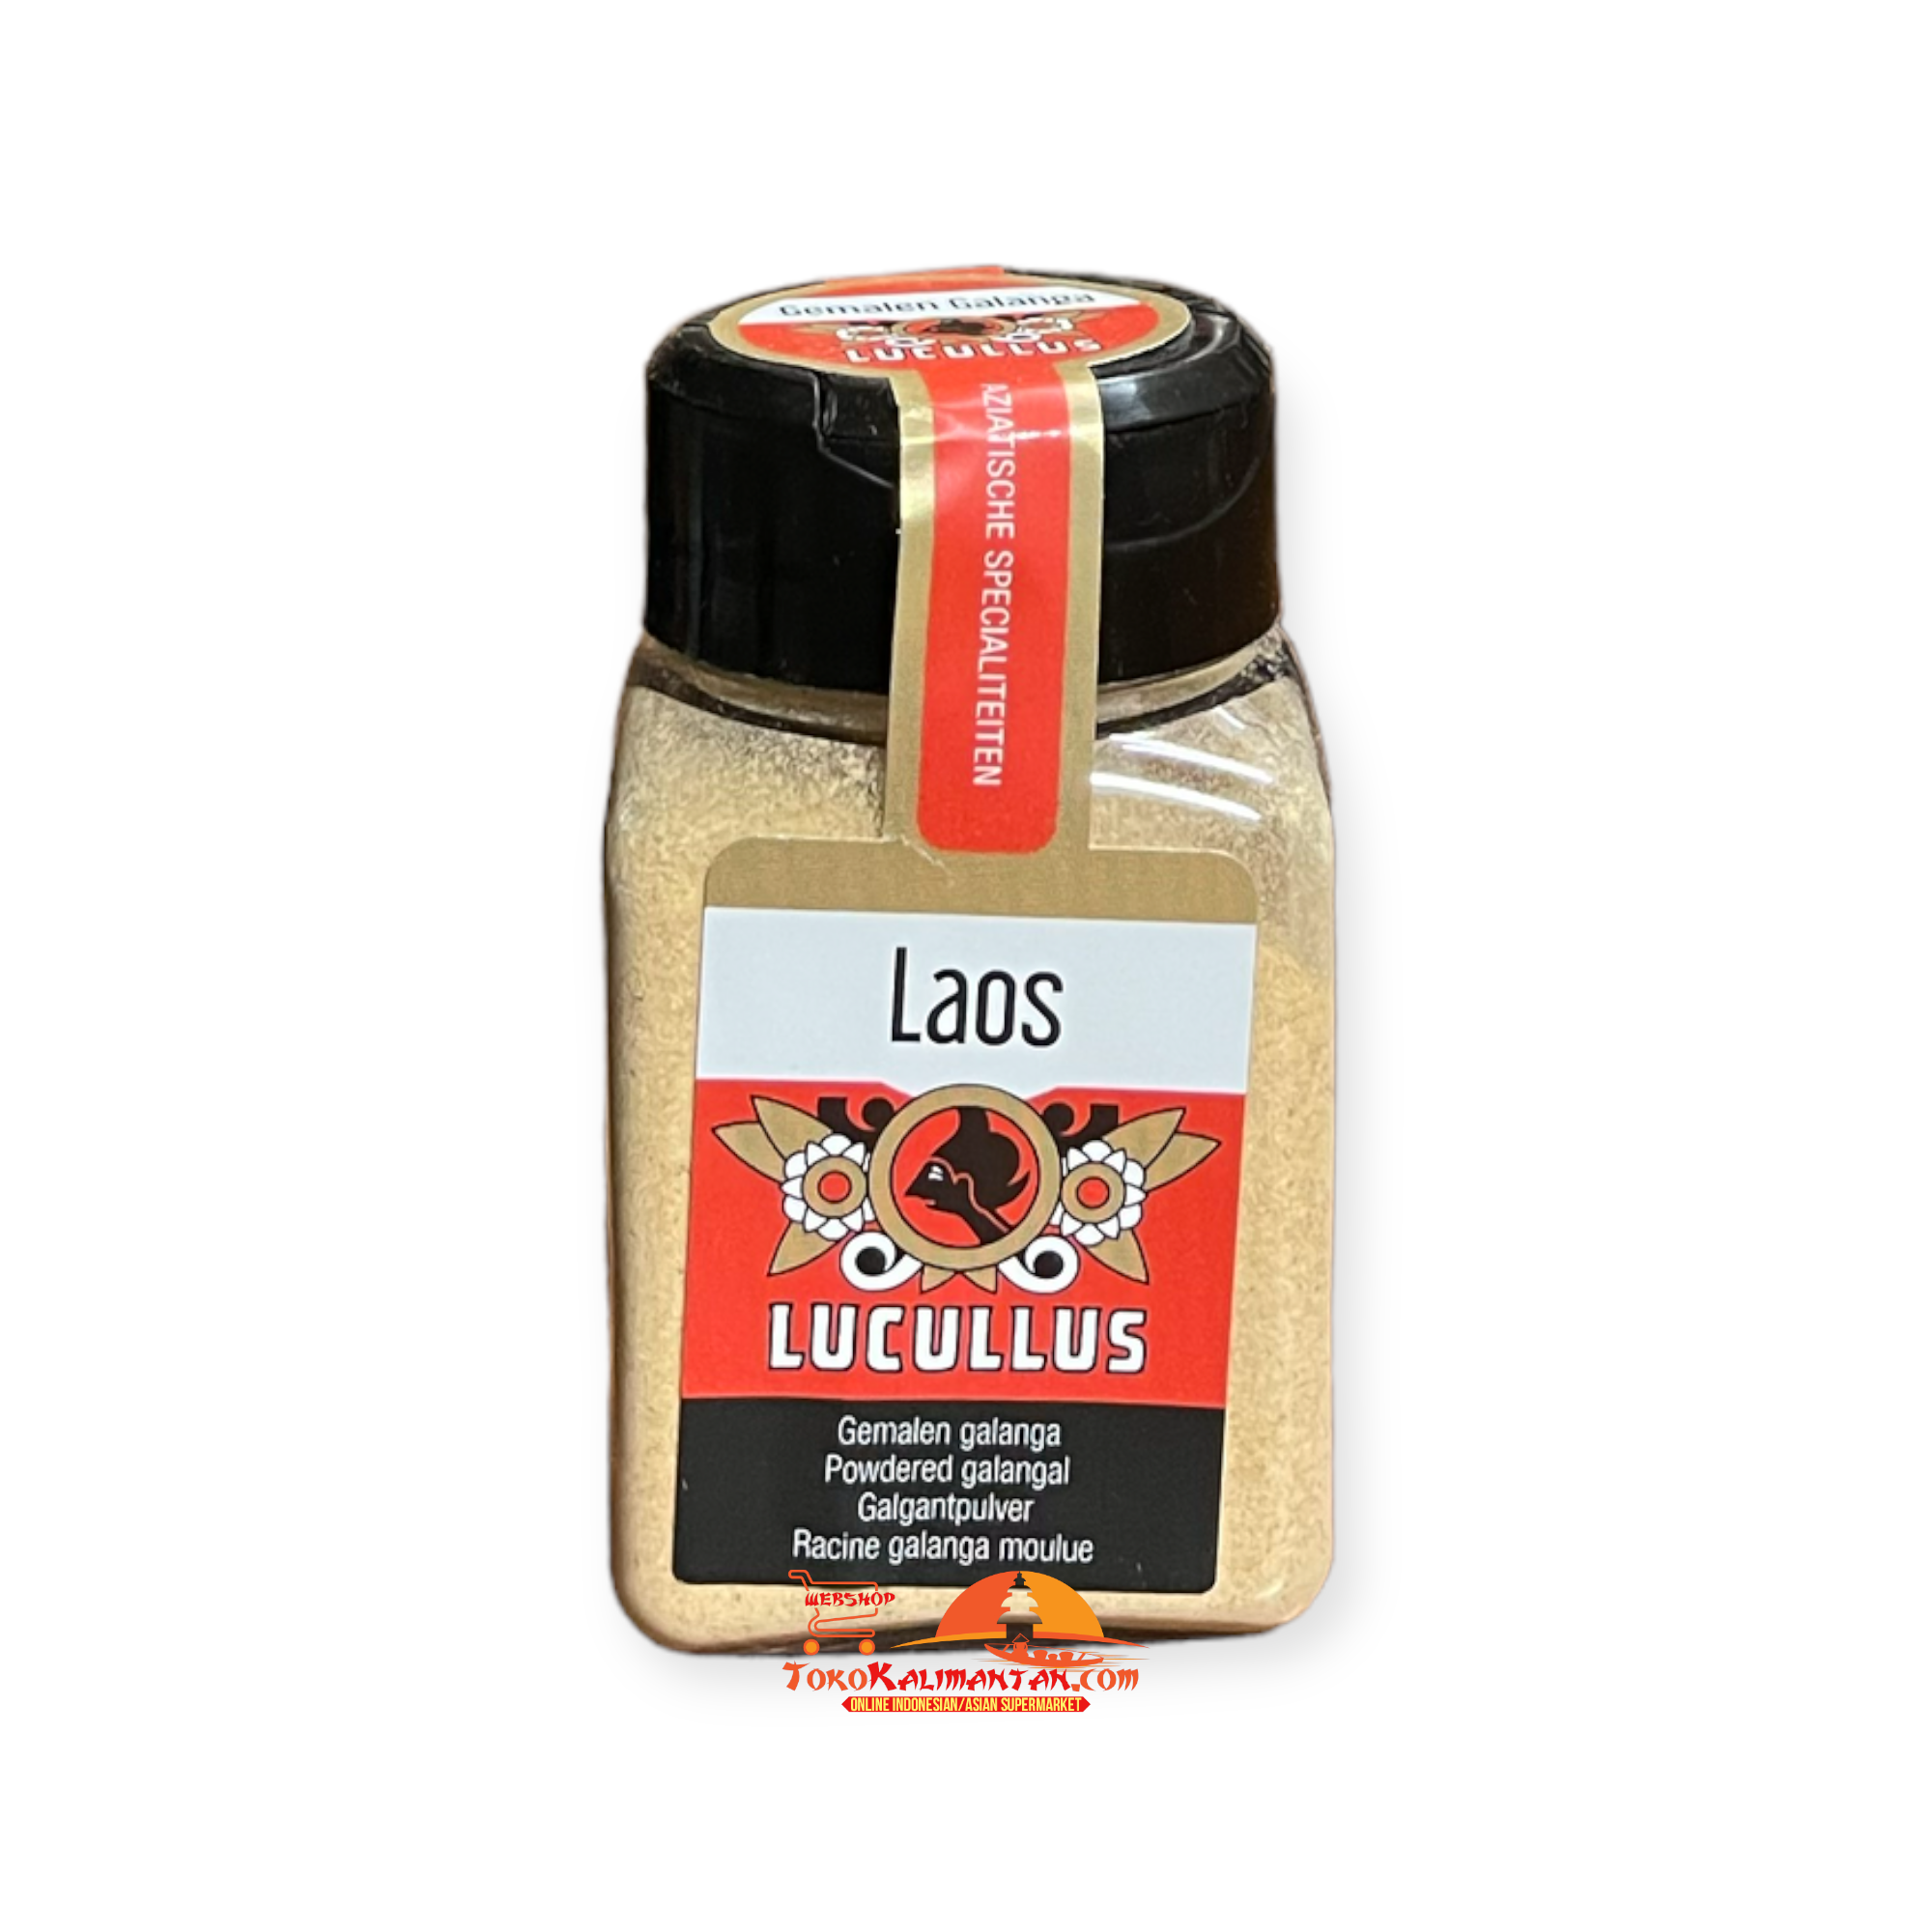 Lucullus Lucullus - Laos 30 Gram